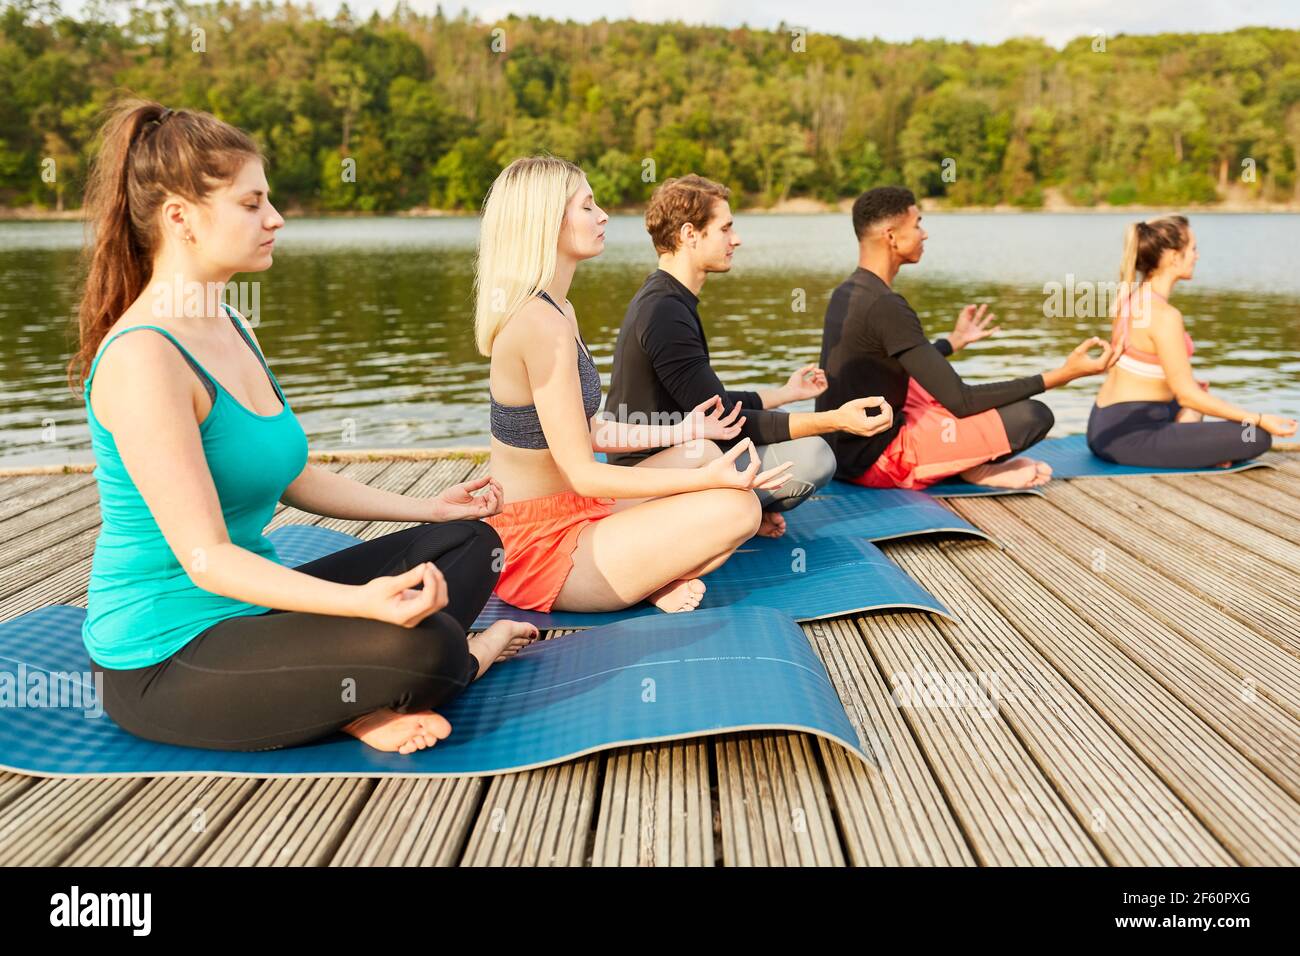 Gruppe von jungen Leuten, die Yoga in einem Wellness-Kurs machen In der Natur am Seeufer Stockfoto